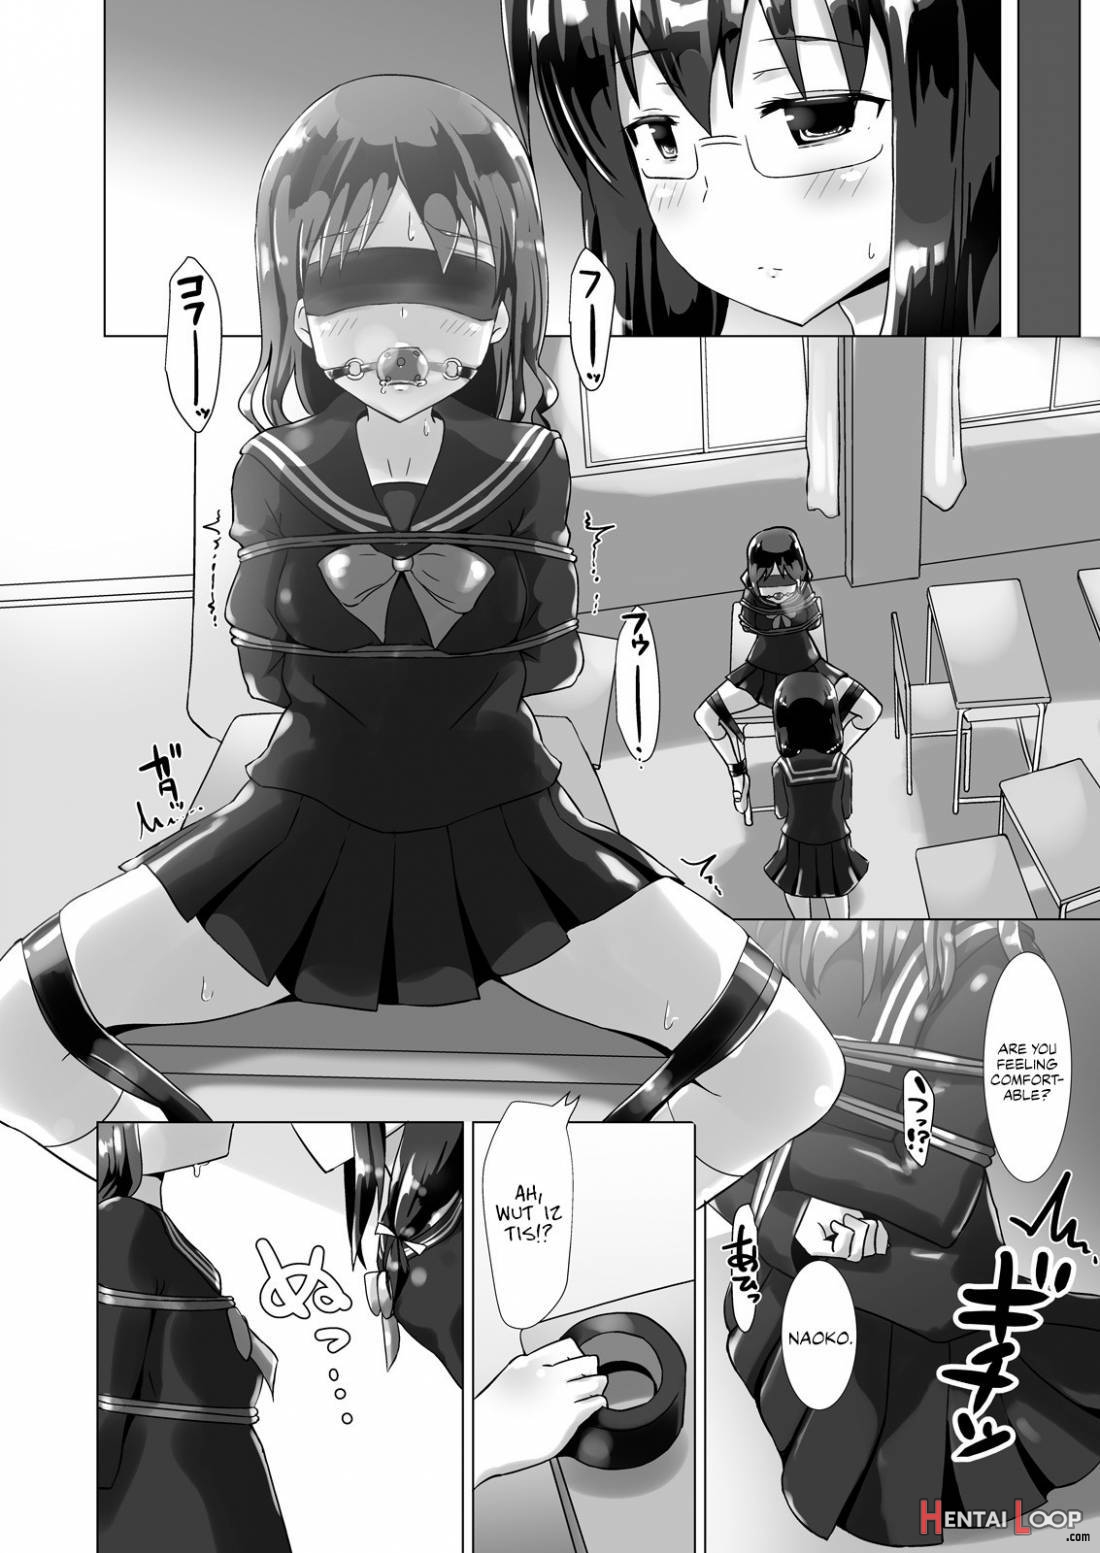 Yumewatari No Mistress Night 3 page 4